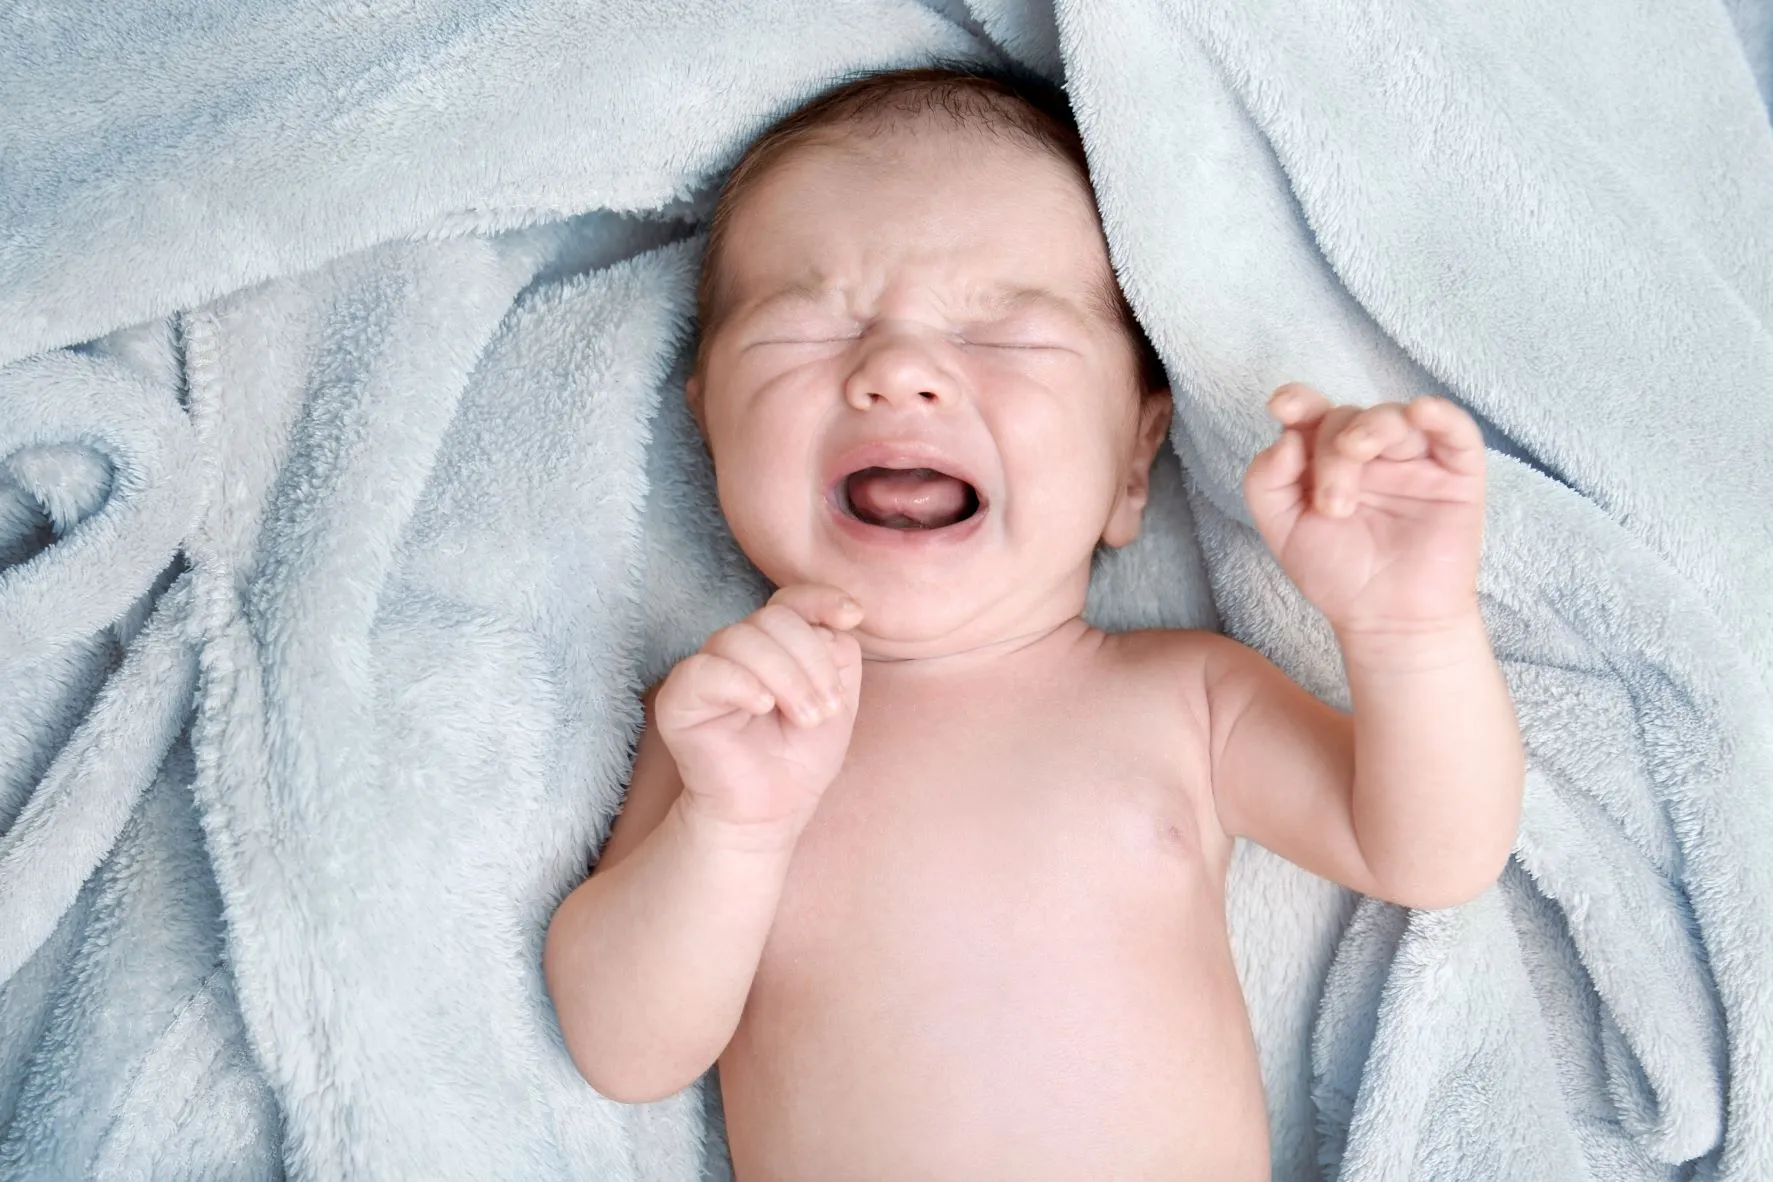 發燒是嬰兒患上尿道炎的一個警號